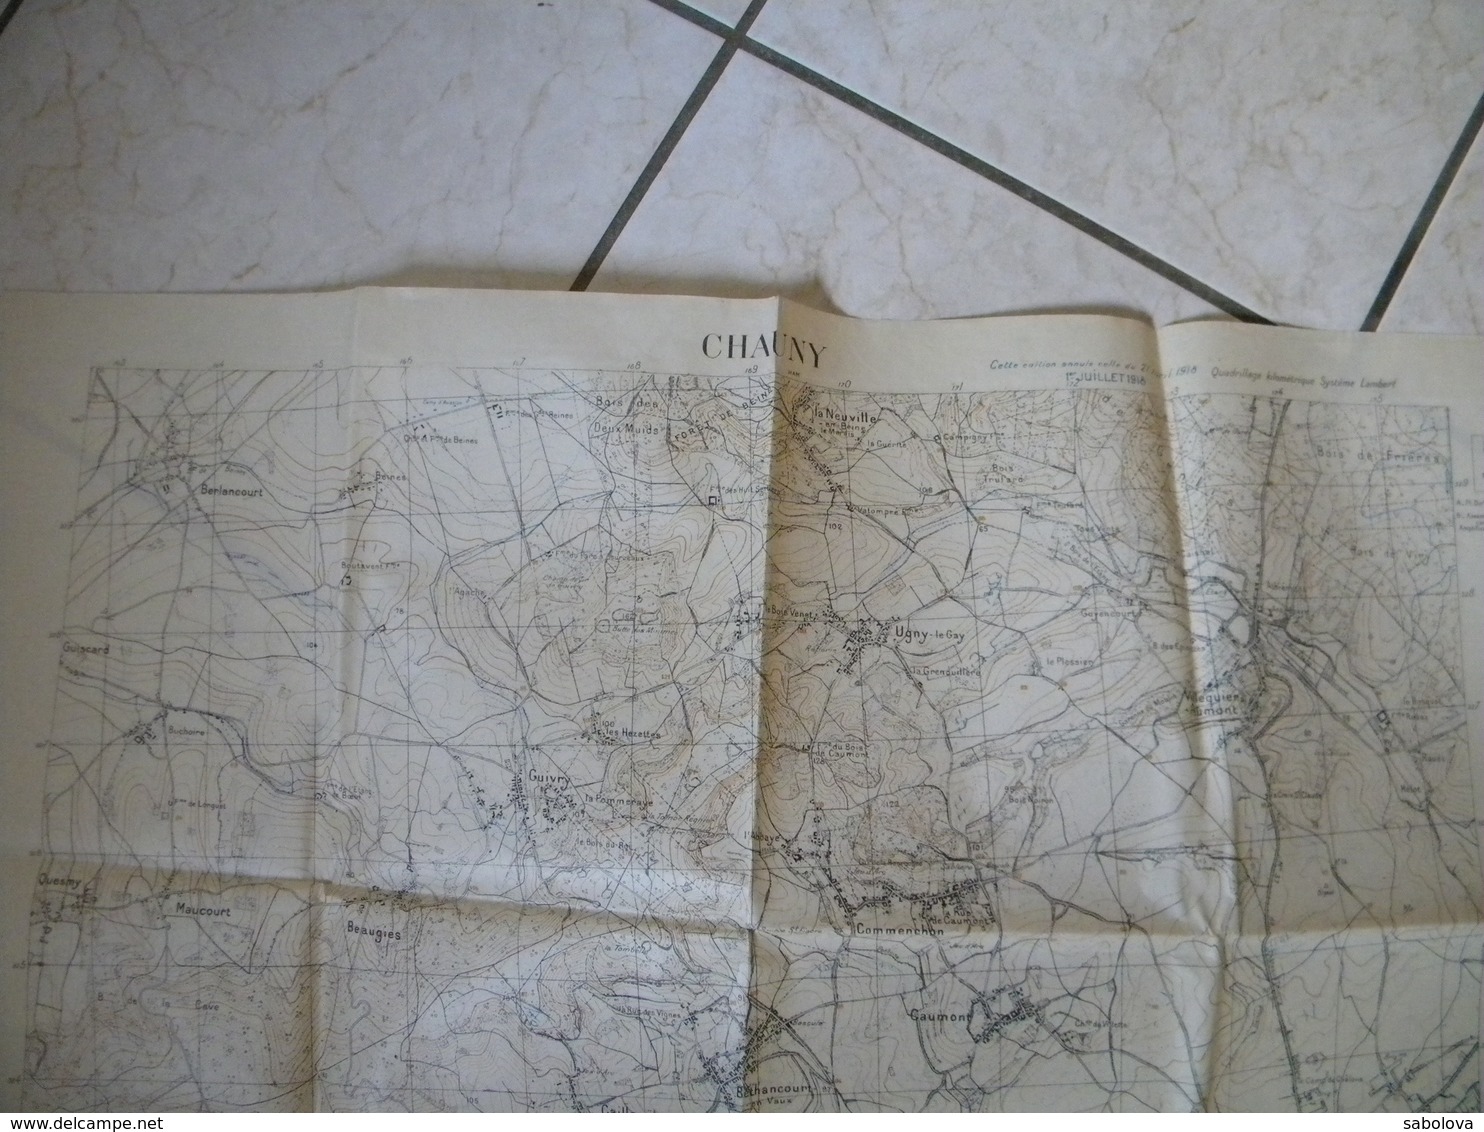 1914/1918 carte 1/20000 état major 2,06/0,75 Mètre. Chauny près Laon. Juillet 2018. vue sur tranchées nommées et chemins